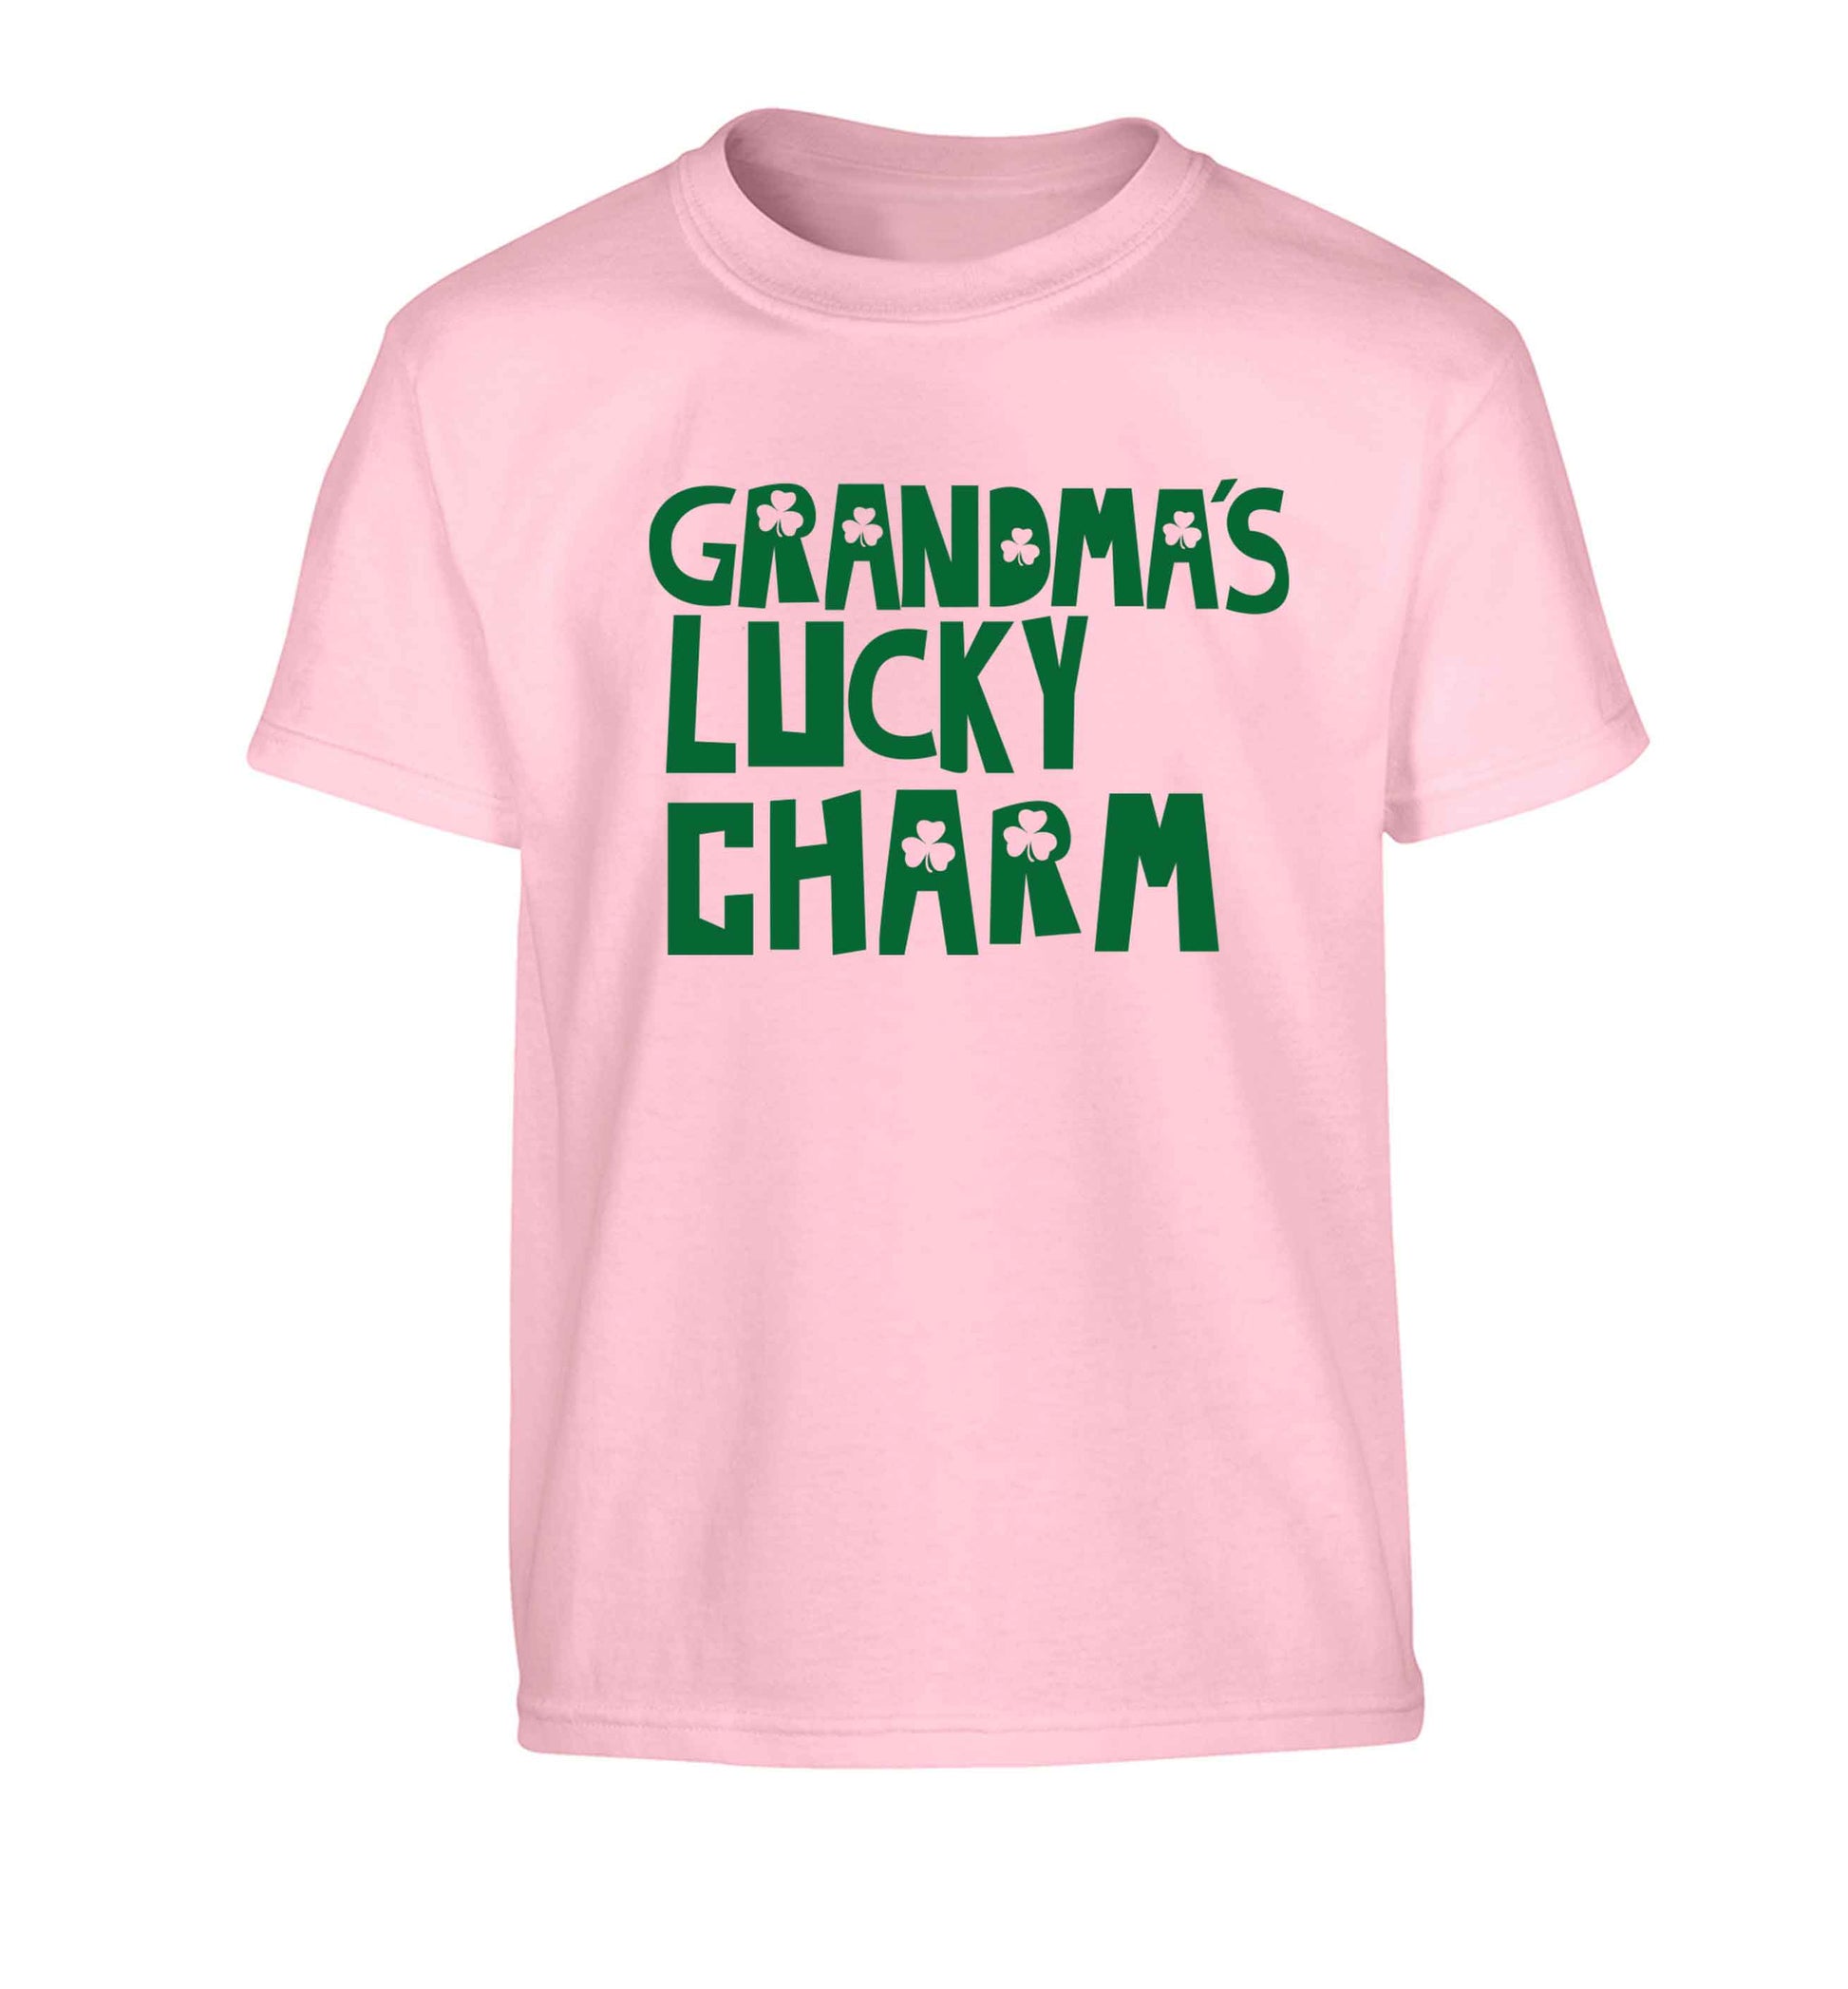 Grandma's lucky charm Children's light pink Tshirt 12-13 Years